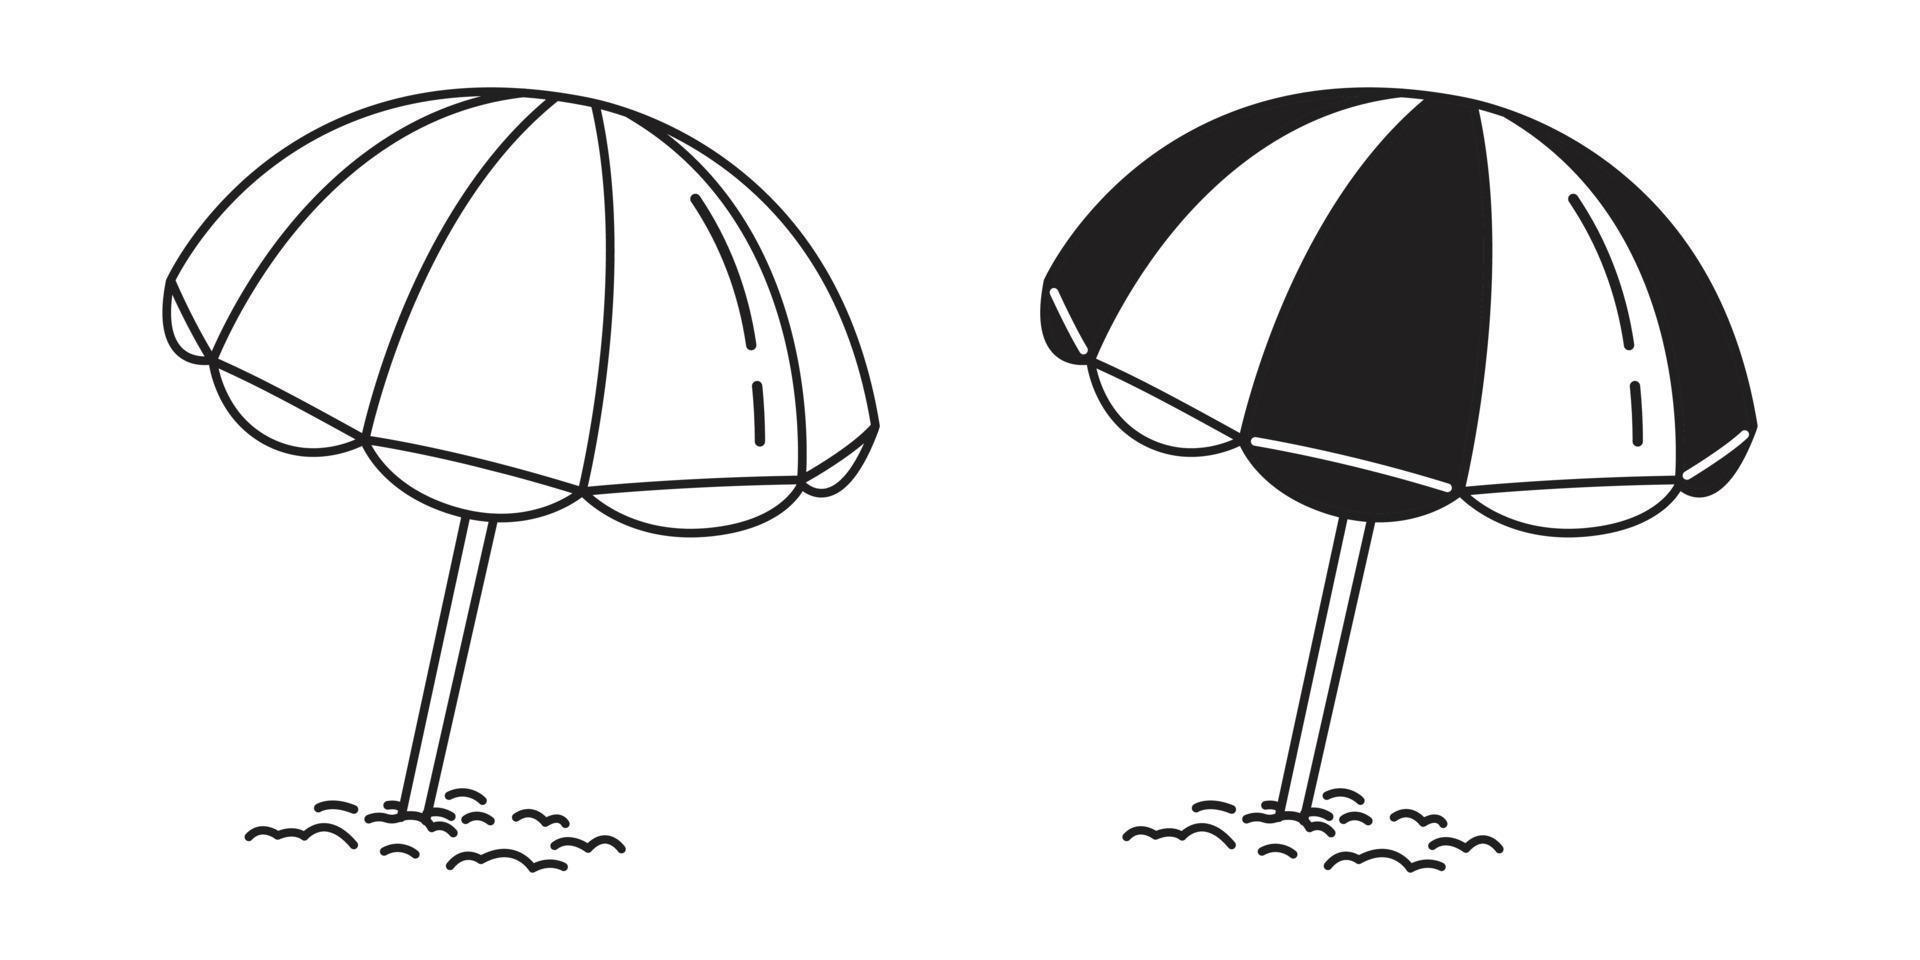 plage parapluie vecteur logo illustration été mer océan griffonnage dessin animé blanc